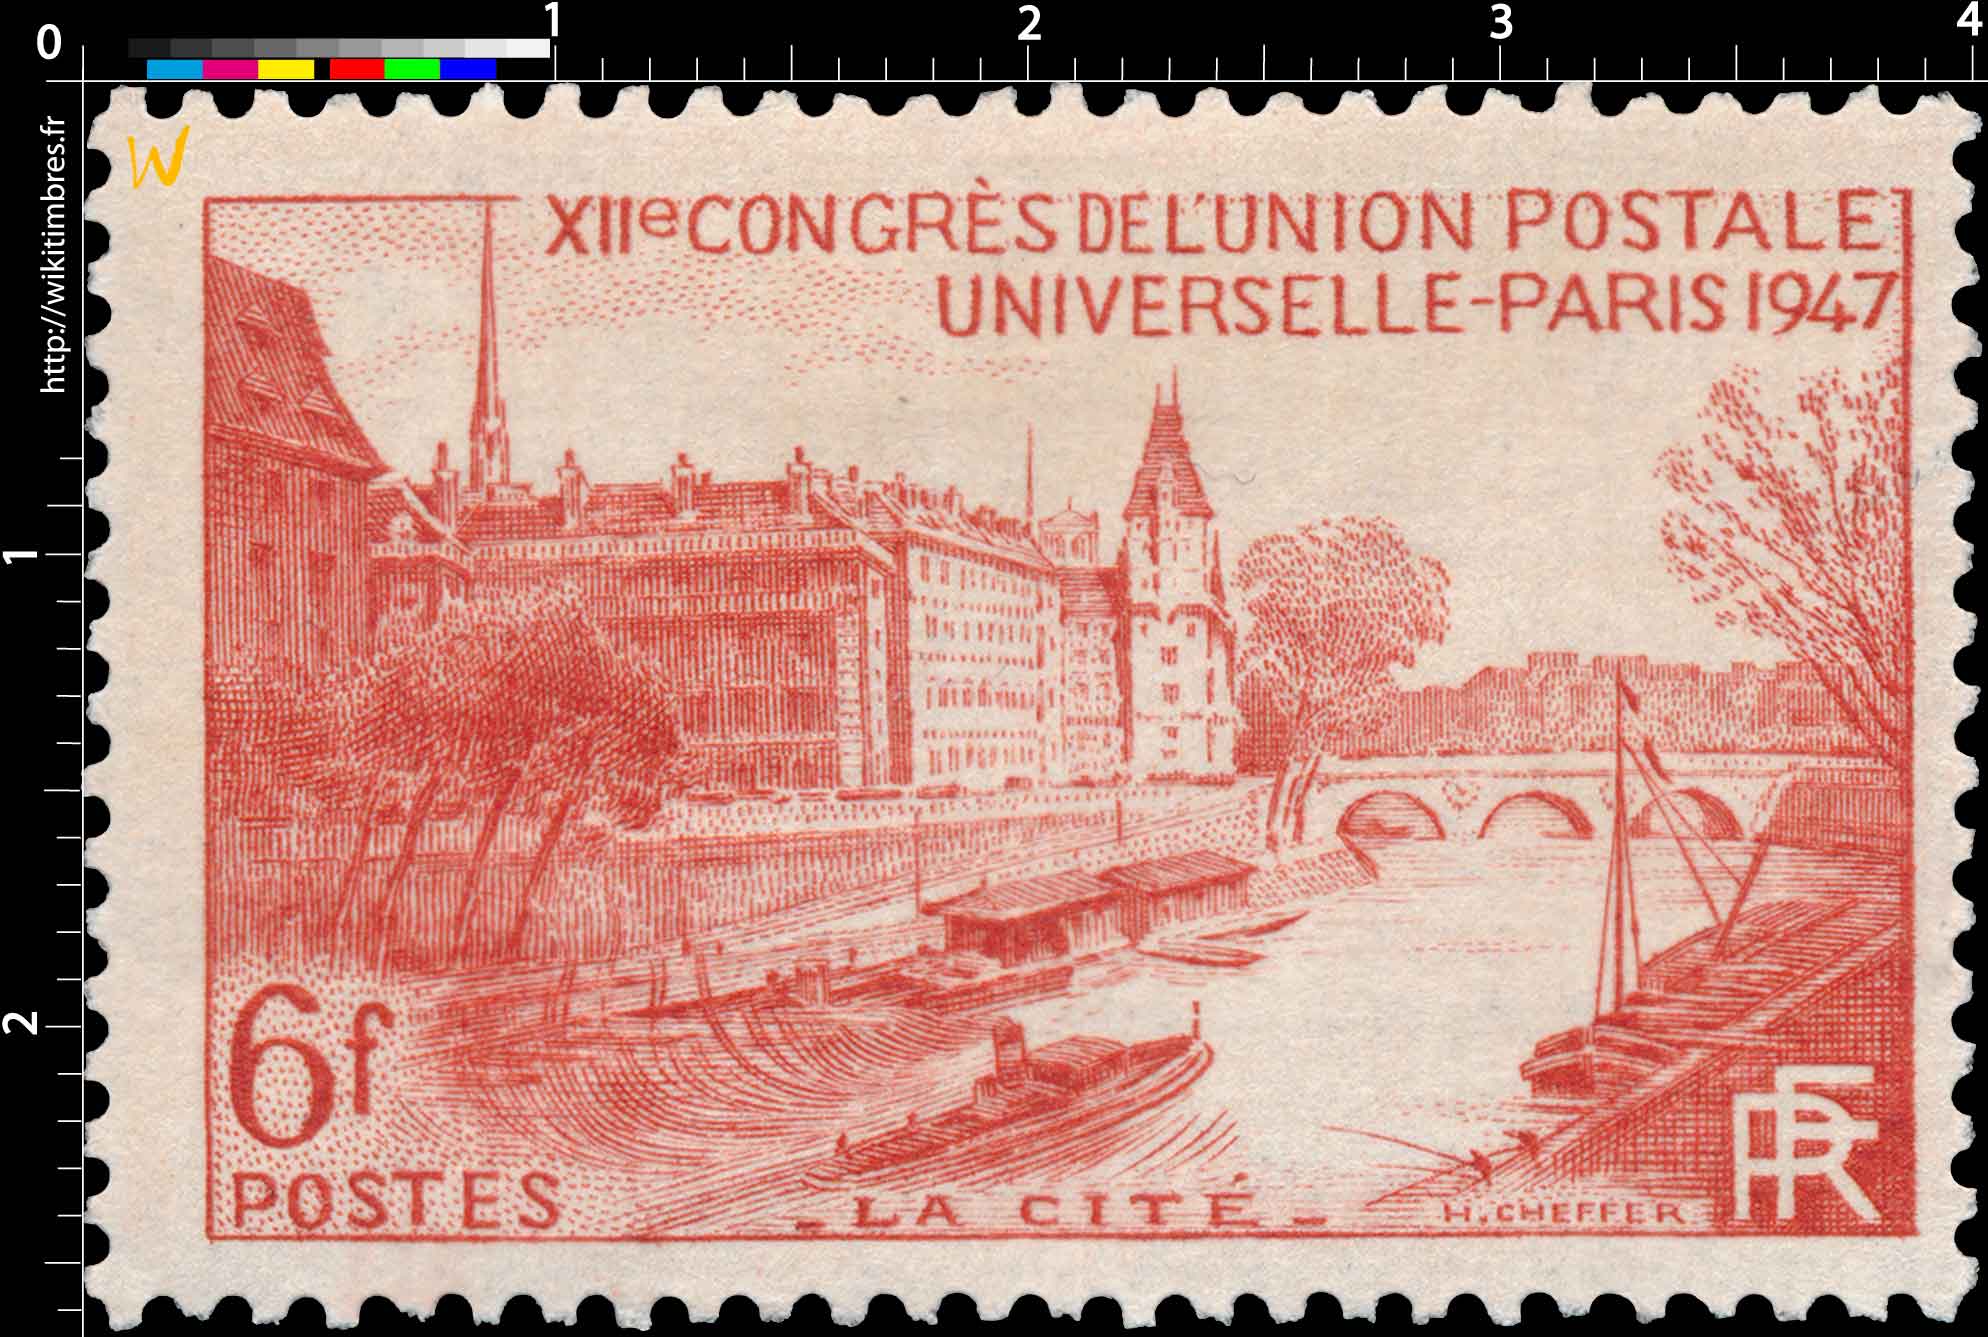 XIIe CONGRÈS DE L'UNION POSTALE UNIVERSELLE - PARIS 1947 - LA CITÉ -